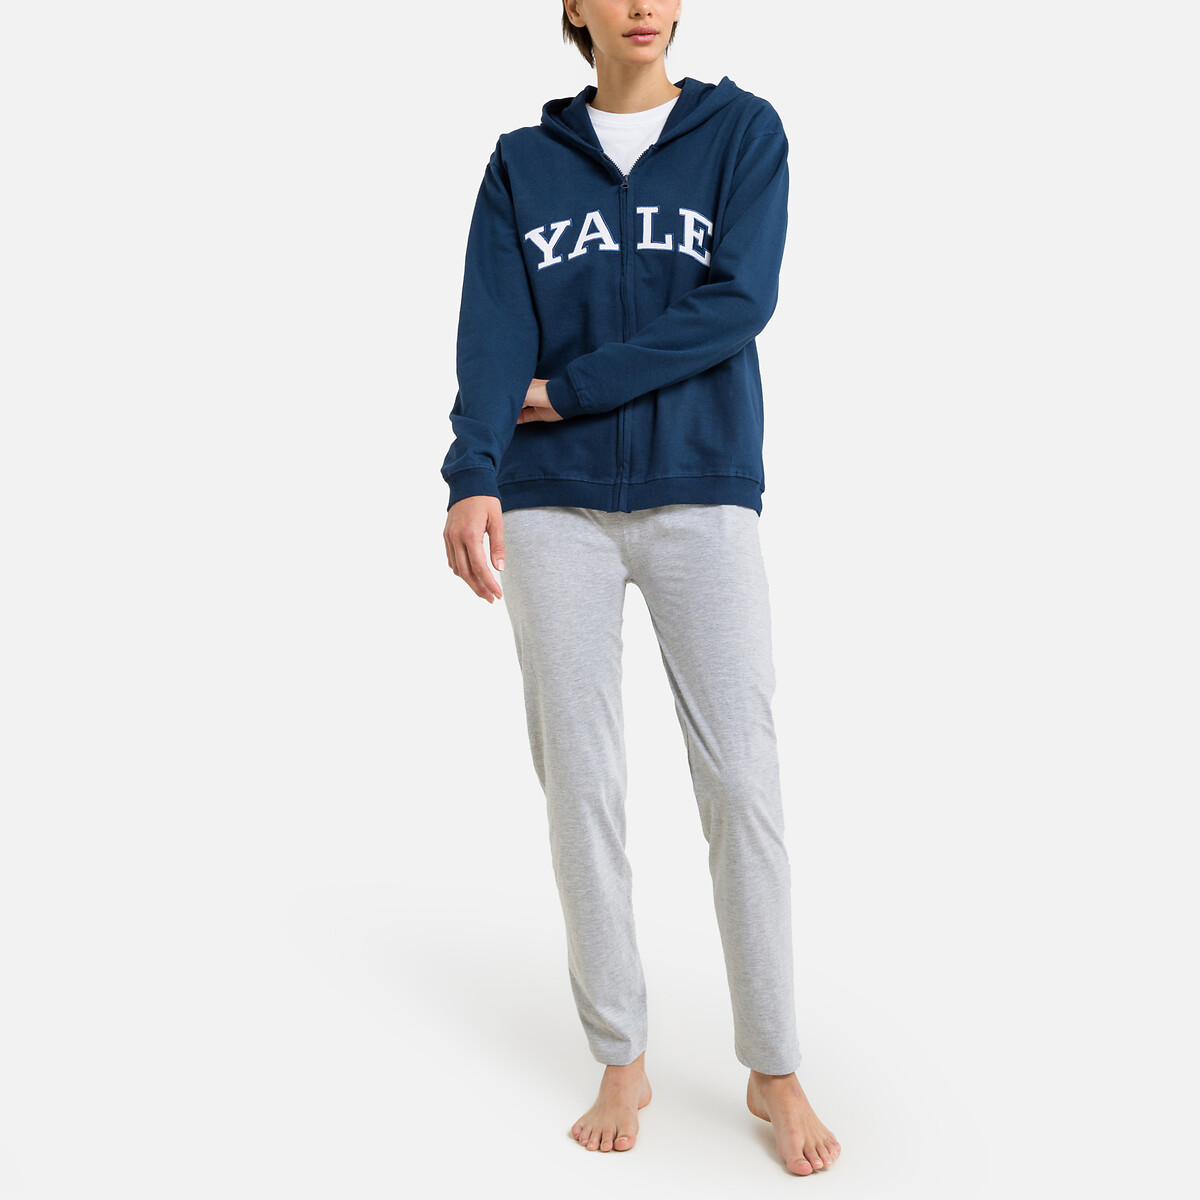 Pijama azul marino/gris jaspeado Yale | La Redoute